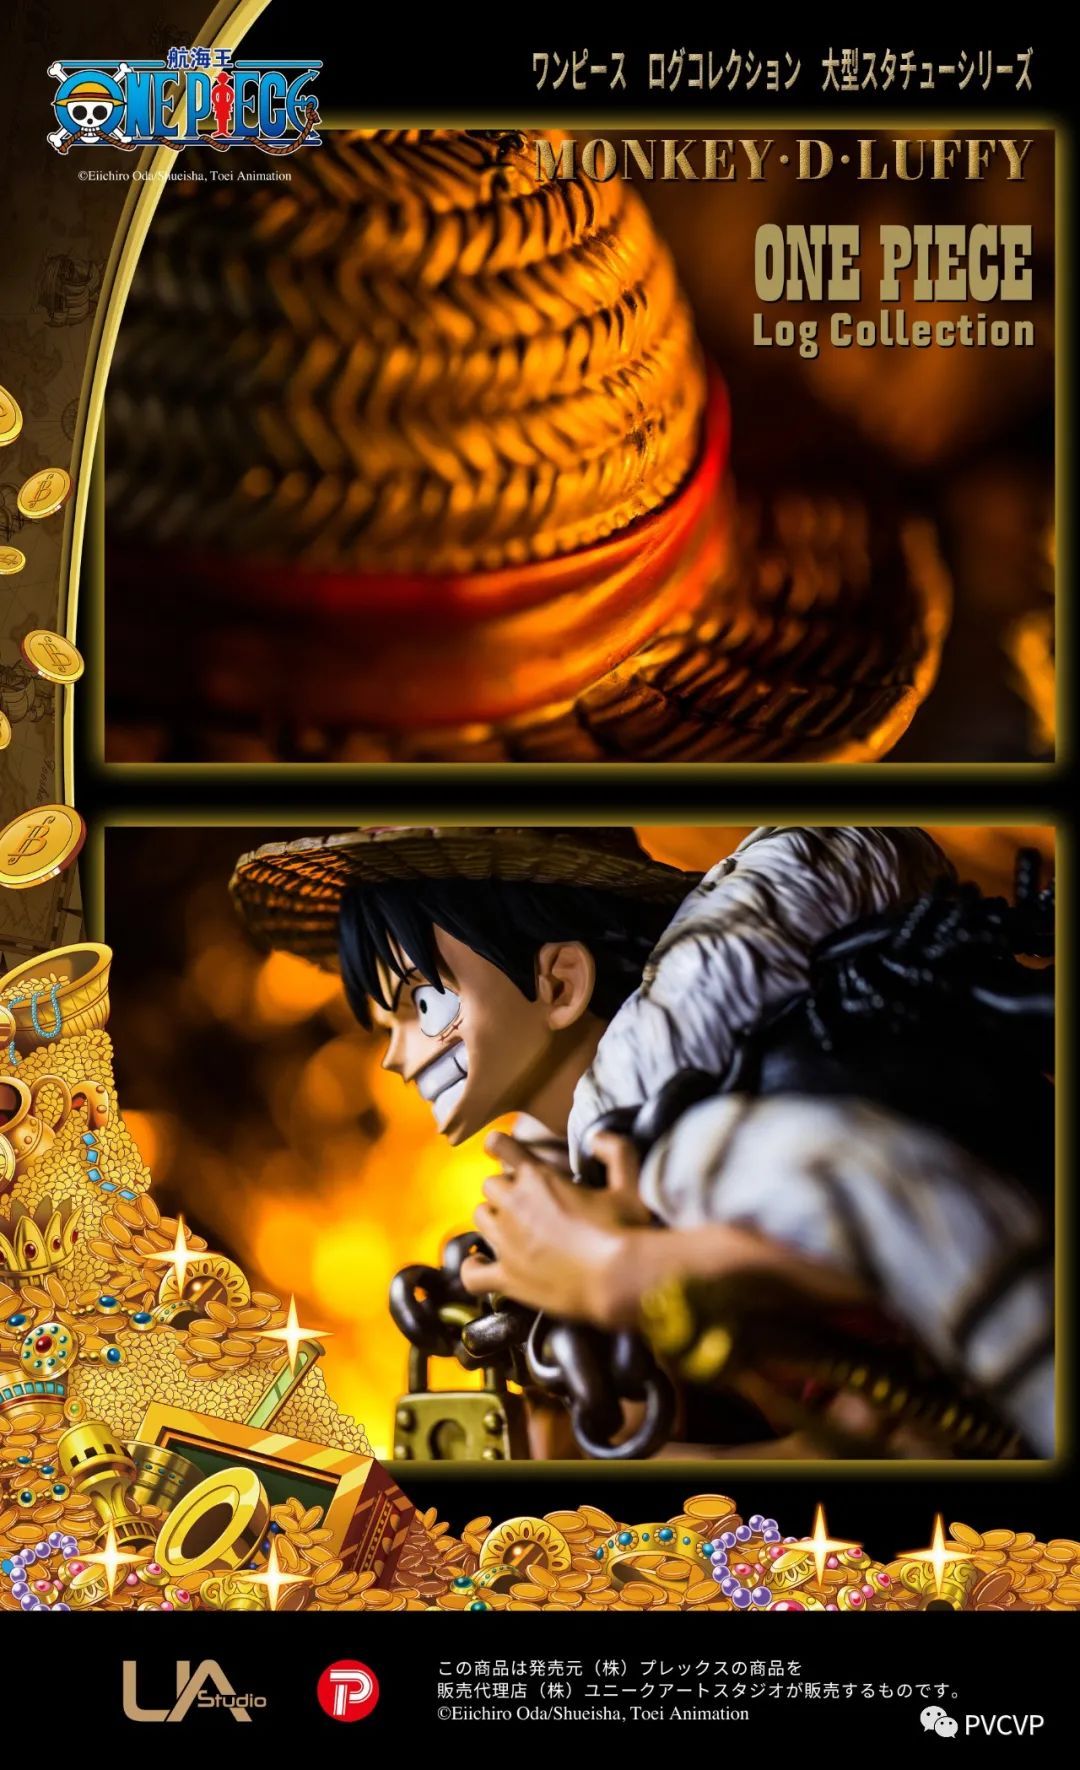 全球首个正版授权「山治」雕像发售，是时候更新一波「One Piece Log Collection」 DVD封面给你们了~